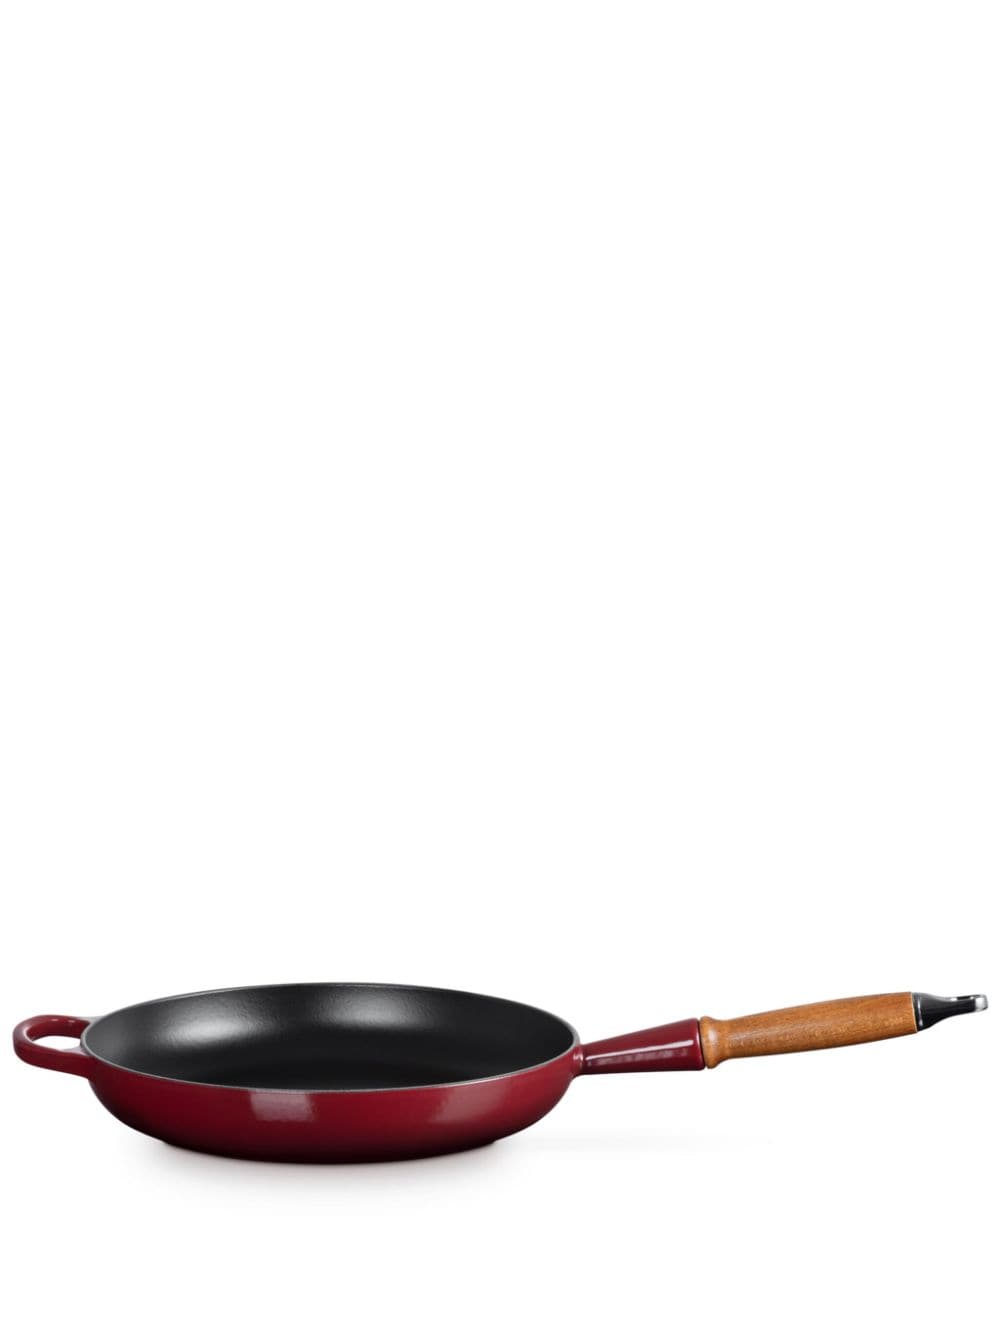 Le Creuset Signature cast iron pan (56.3cm) - Red von Le Creuset